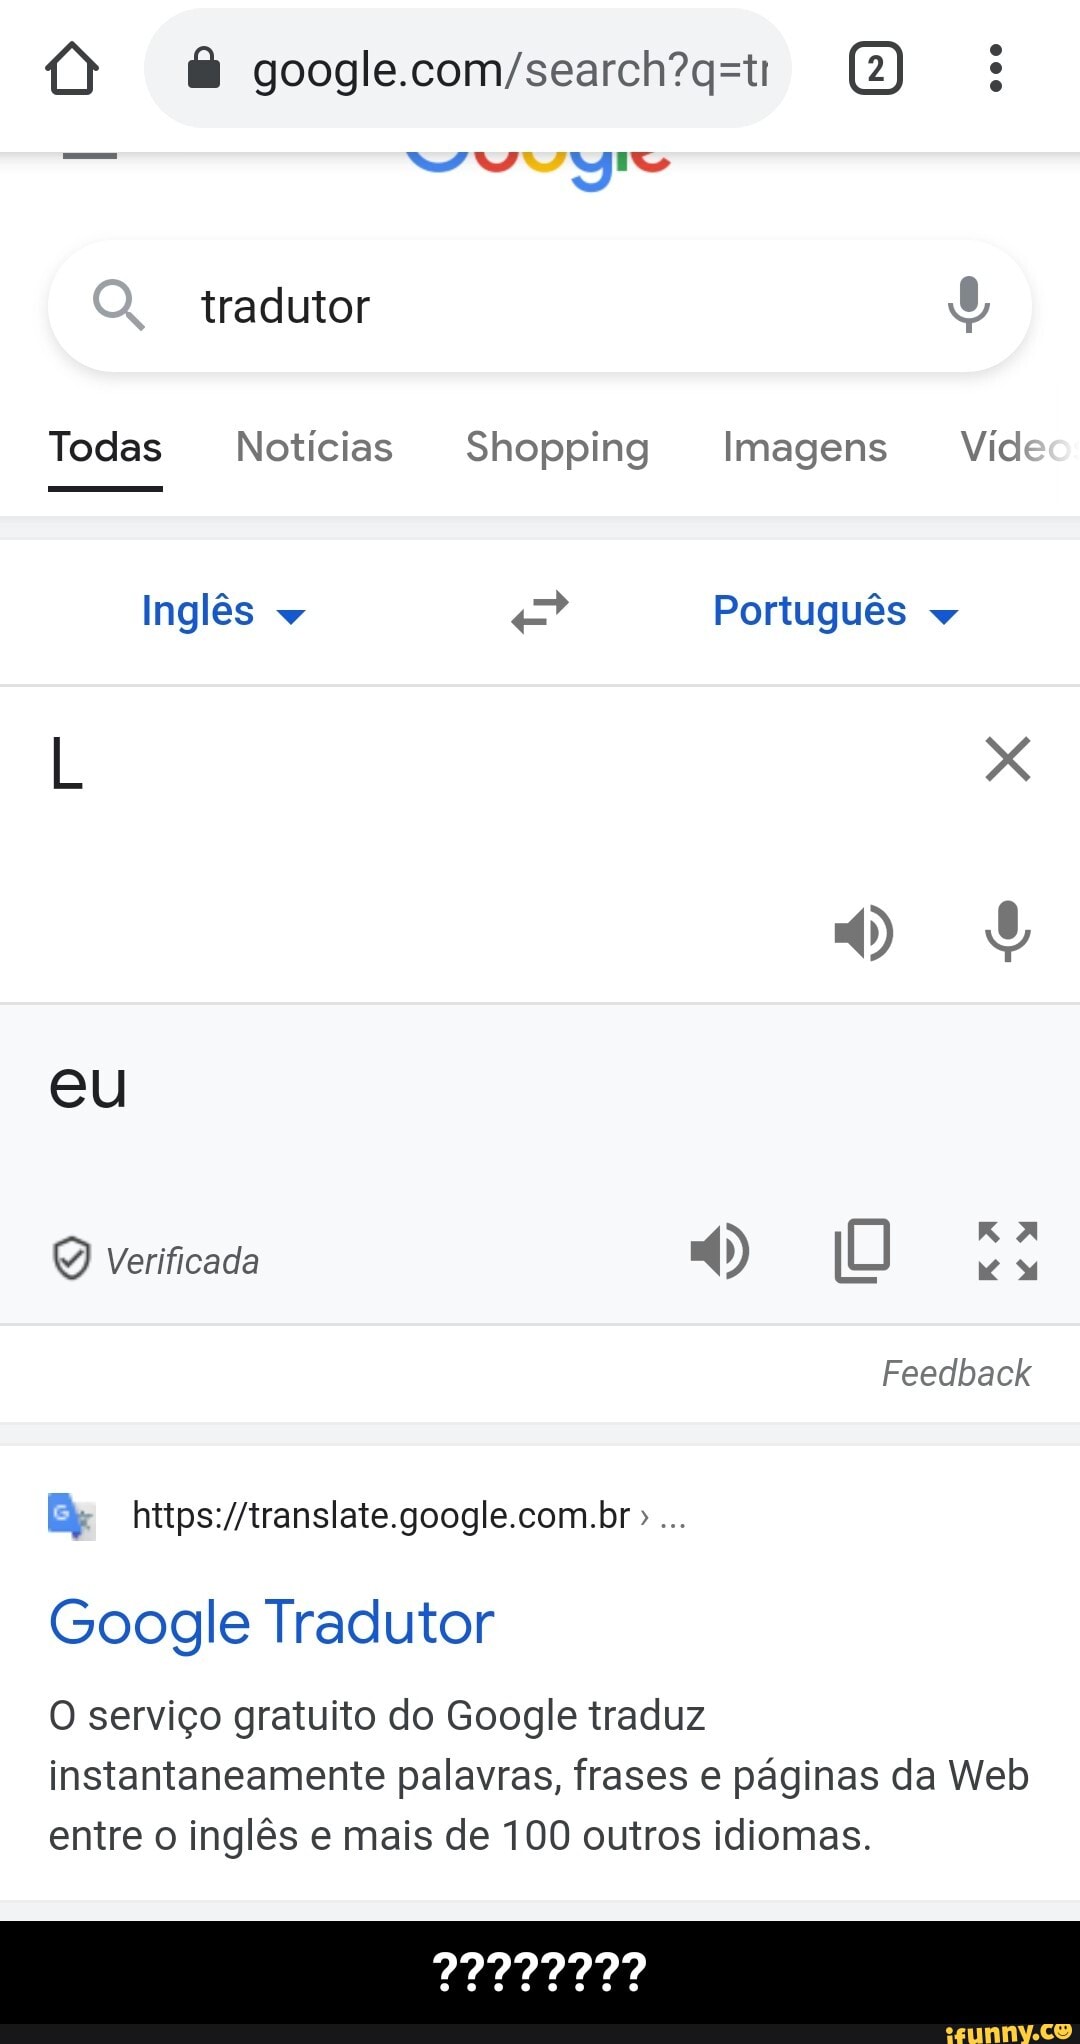 I RELA EU Google O, tradutor U TUDO NOTICIAS IMAGENS MAPAS VÍDEOS Português  eu tenho 11